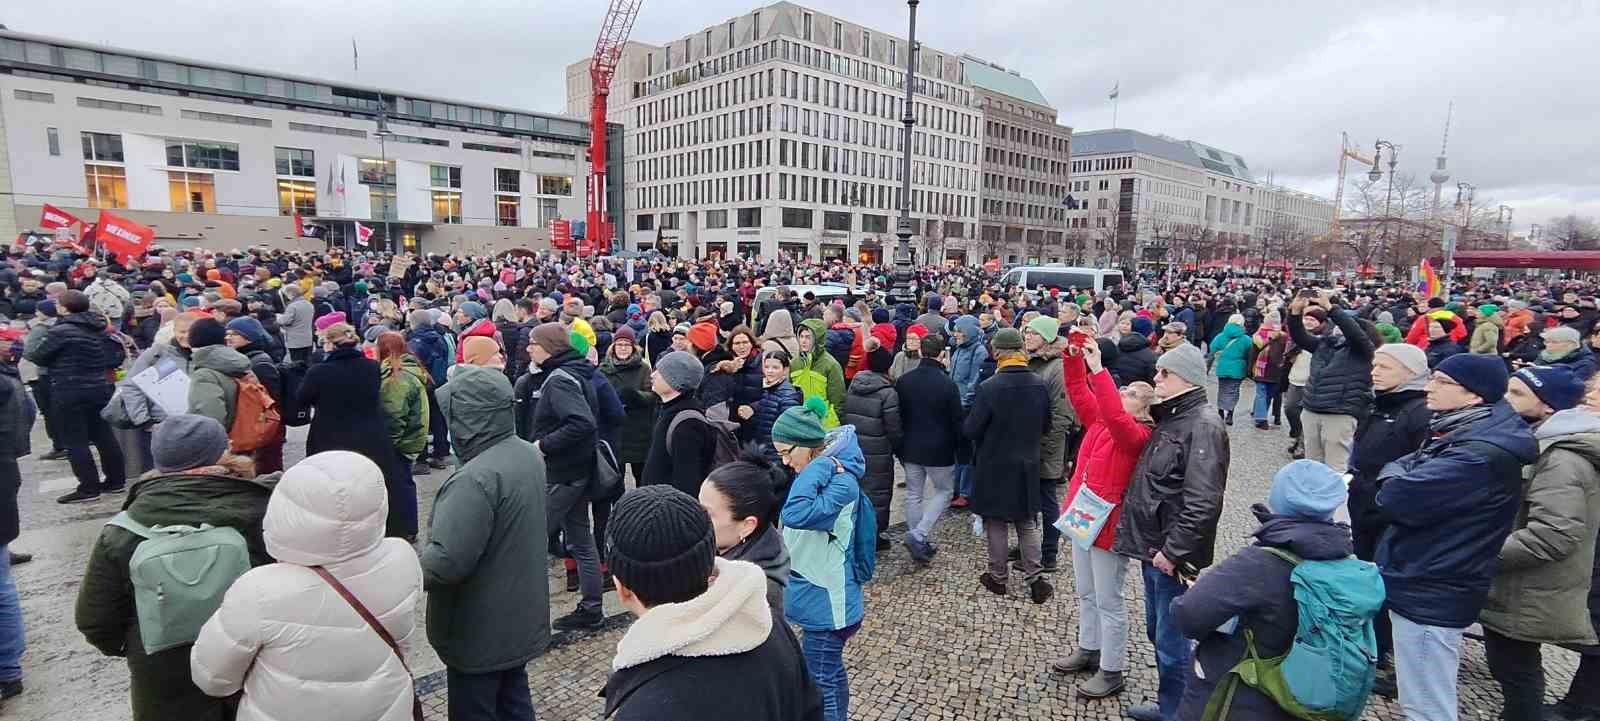 Almanya’da aşırı sağcı AfD Partisi ve ırkçılık karşıtı protesto